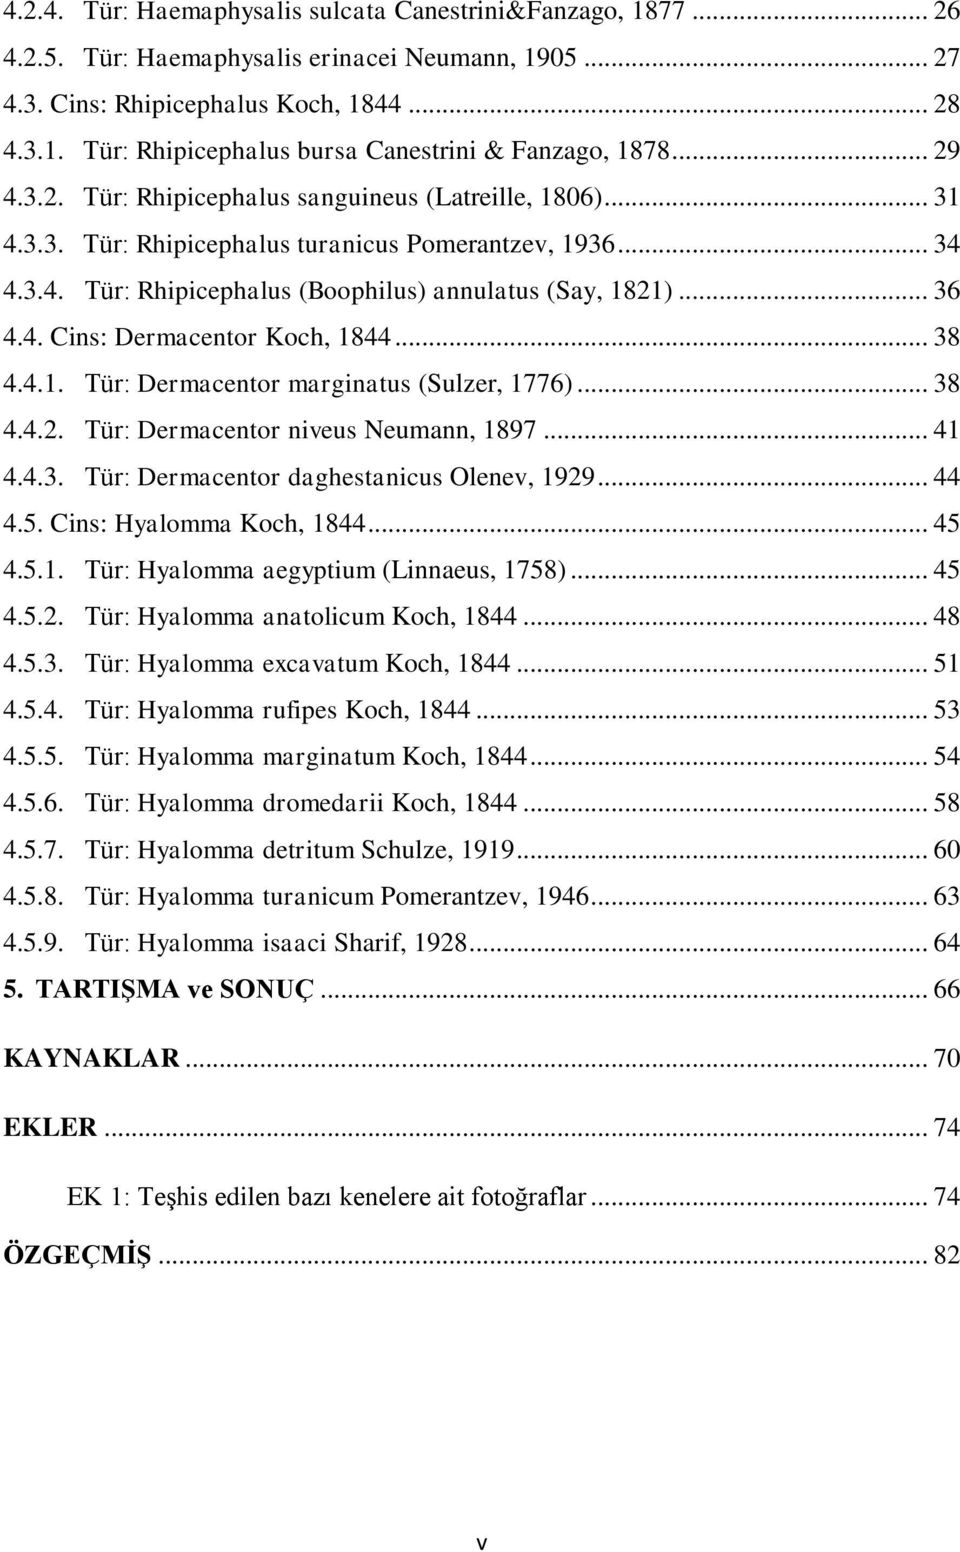 .. 38 4.4.1. Tür: Dermacentor marginatus (Sulzer, 1776)... 38 4.4.2. Tür: Dermacentor niveus Neumann, 1897... 41 4.4.3. Tür: Dermacentor daghestanicus Olenev, 1929... 44 4.5.